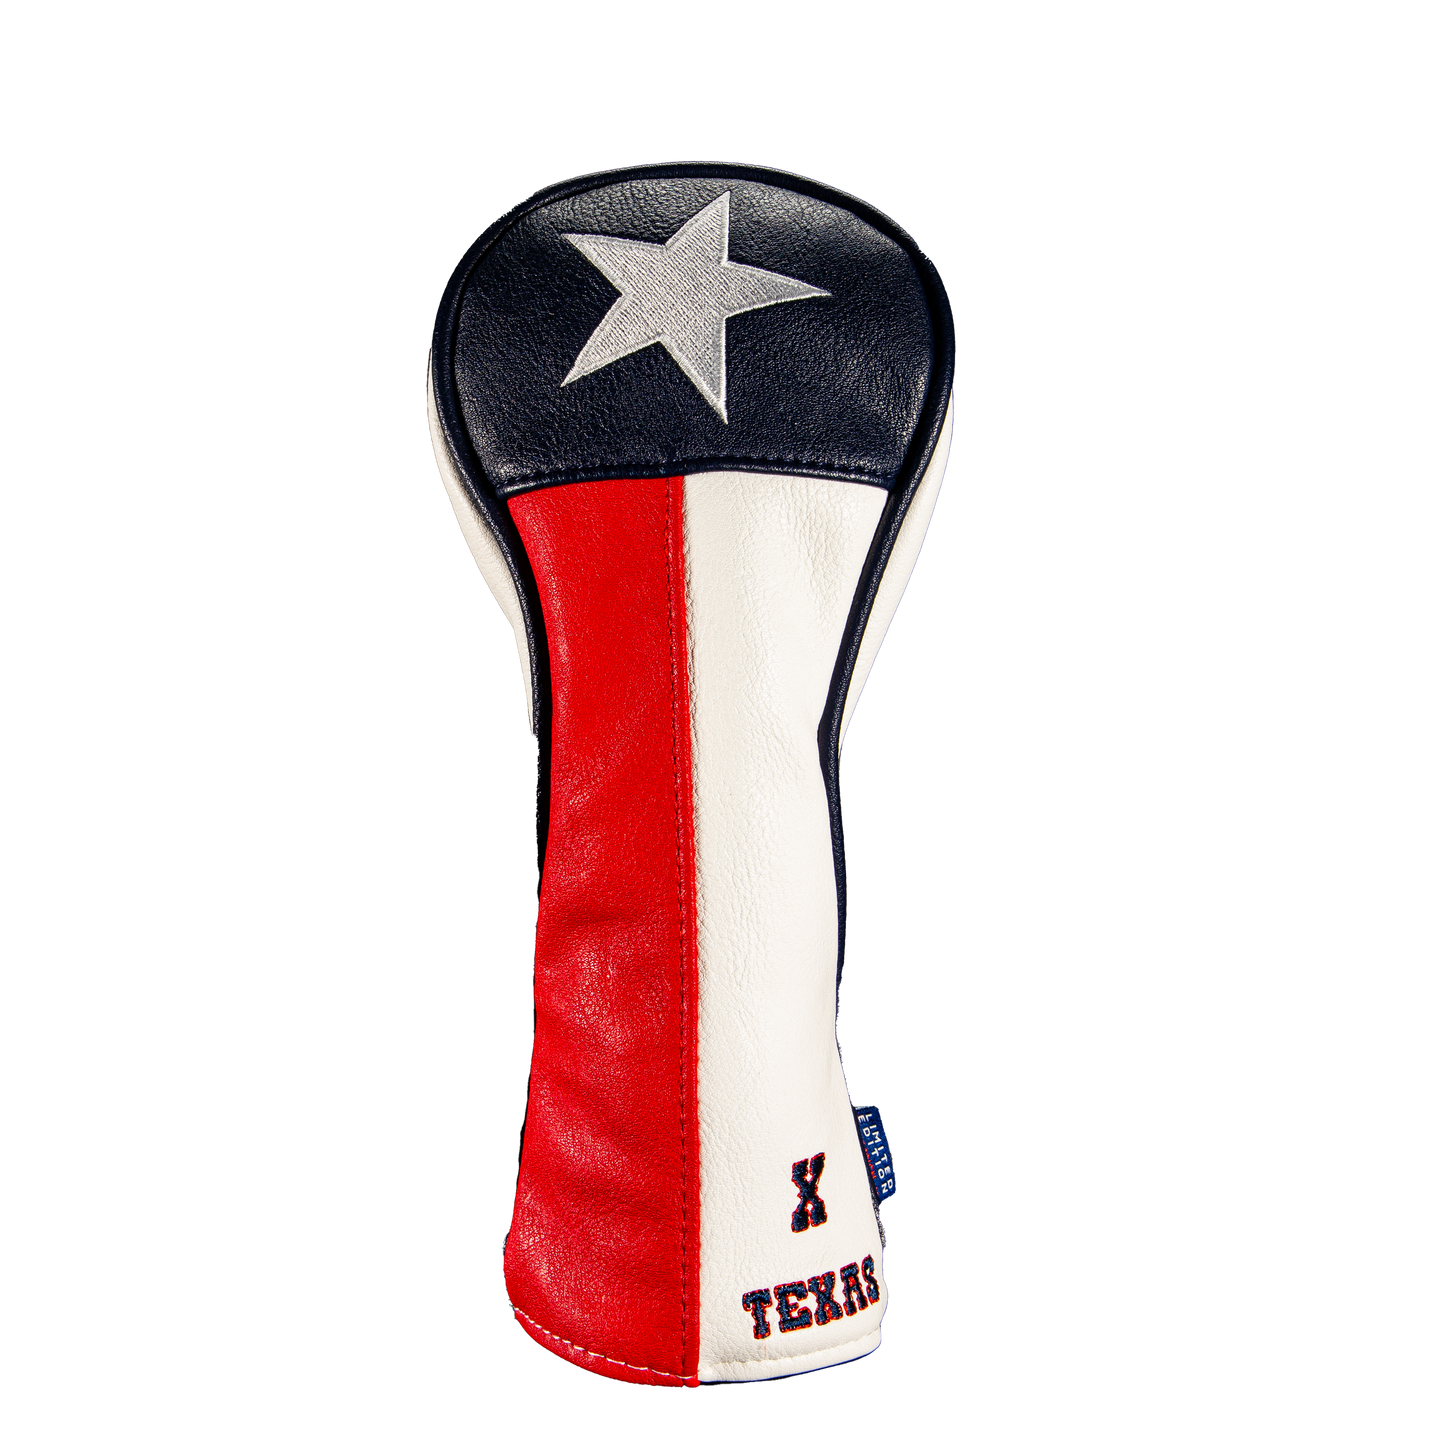 Texas "Flag" Hybrid Cover